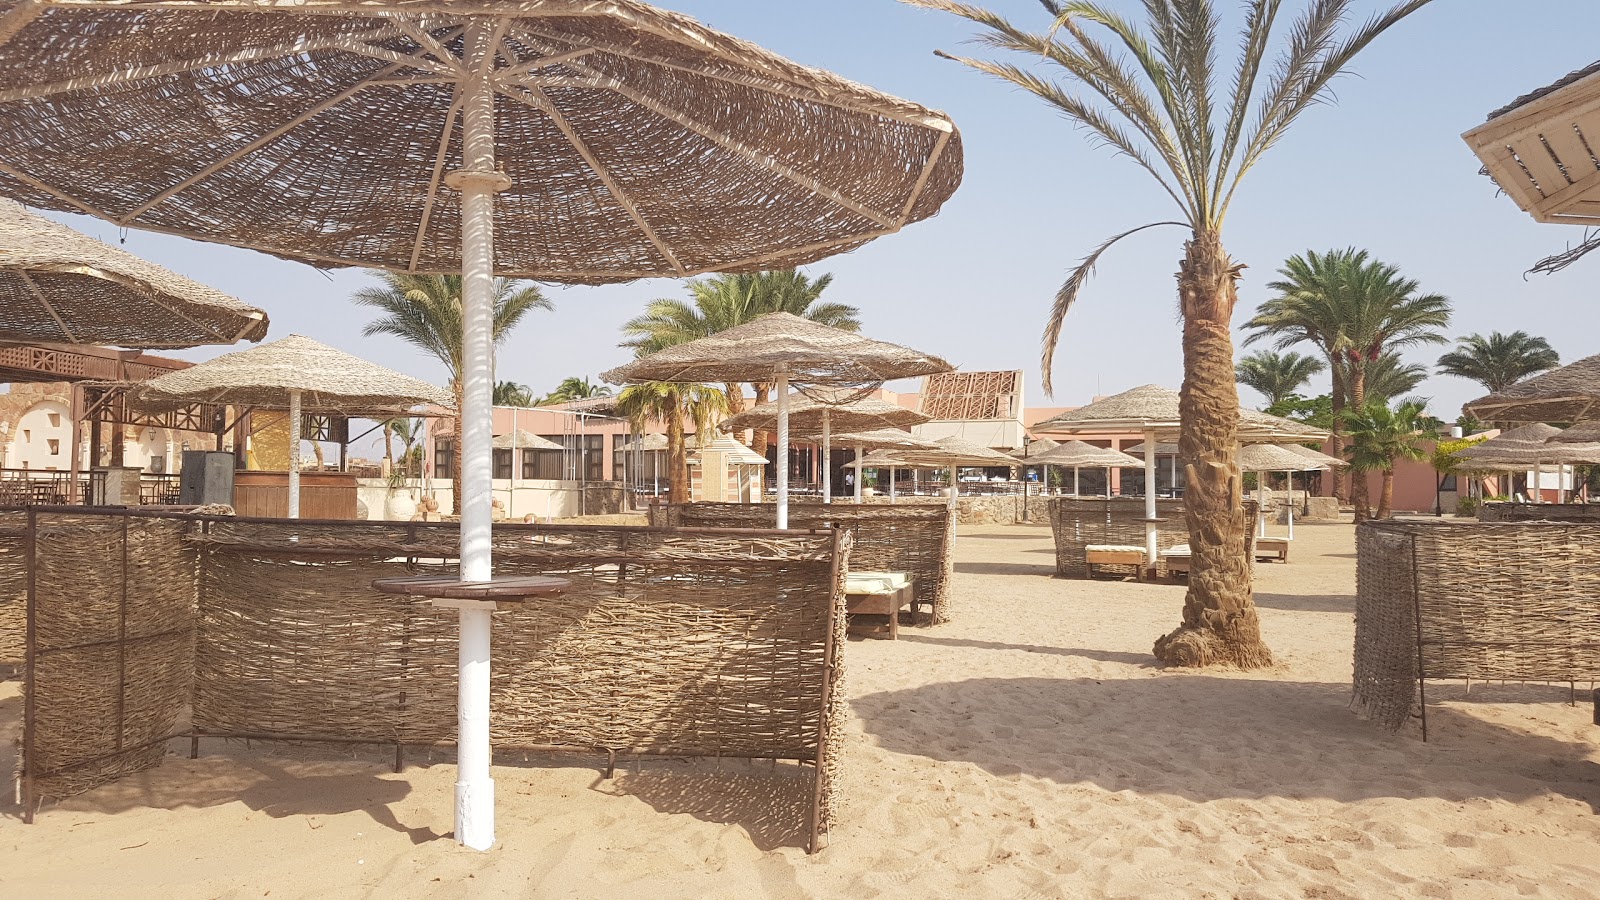 Zdjęcie Safaga beach - popularne miejsce wśród znawców relaksu